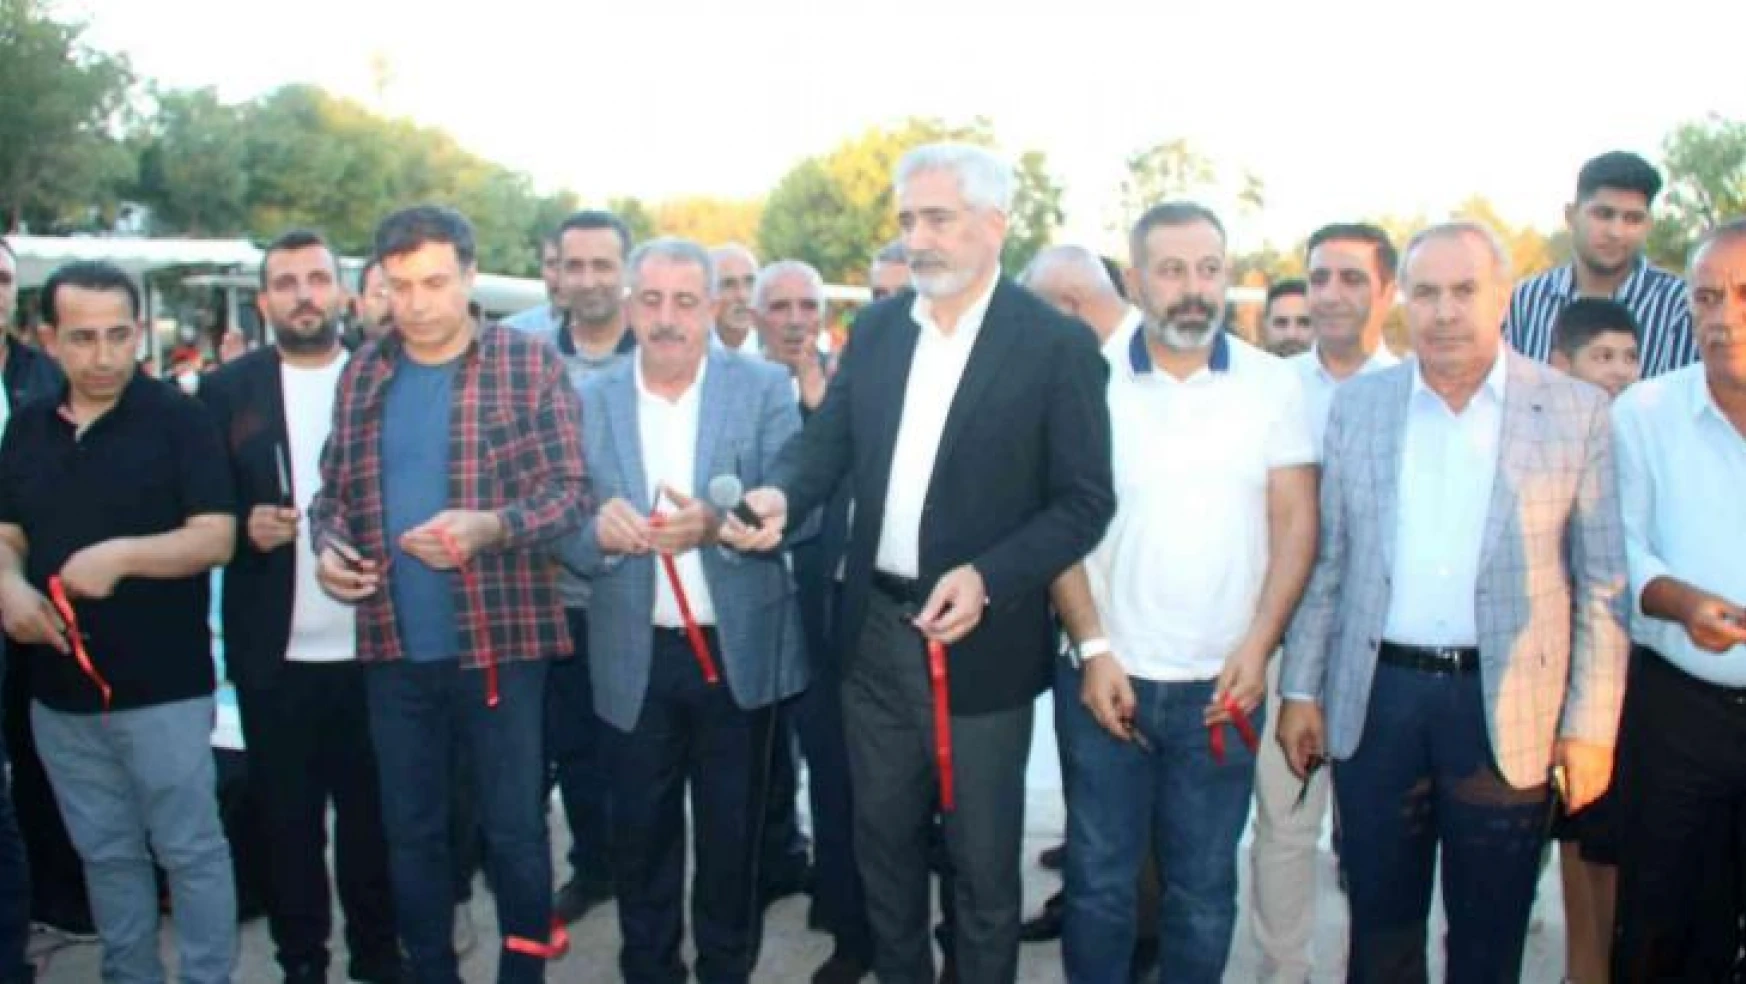 Diyarbakır'da 30 milyon liralık yatırımla kurulan işletme hizmete açıldı